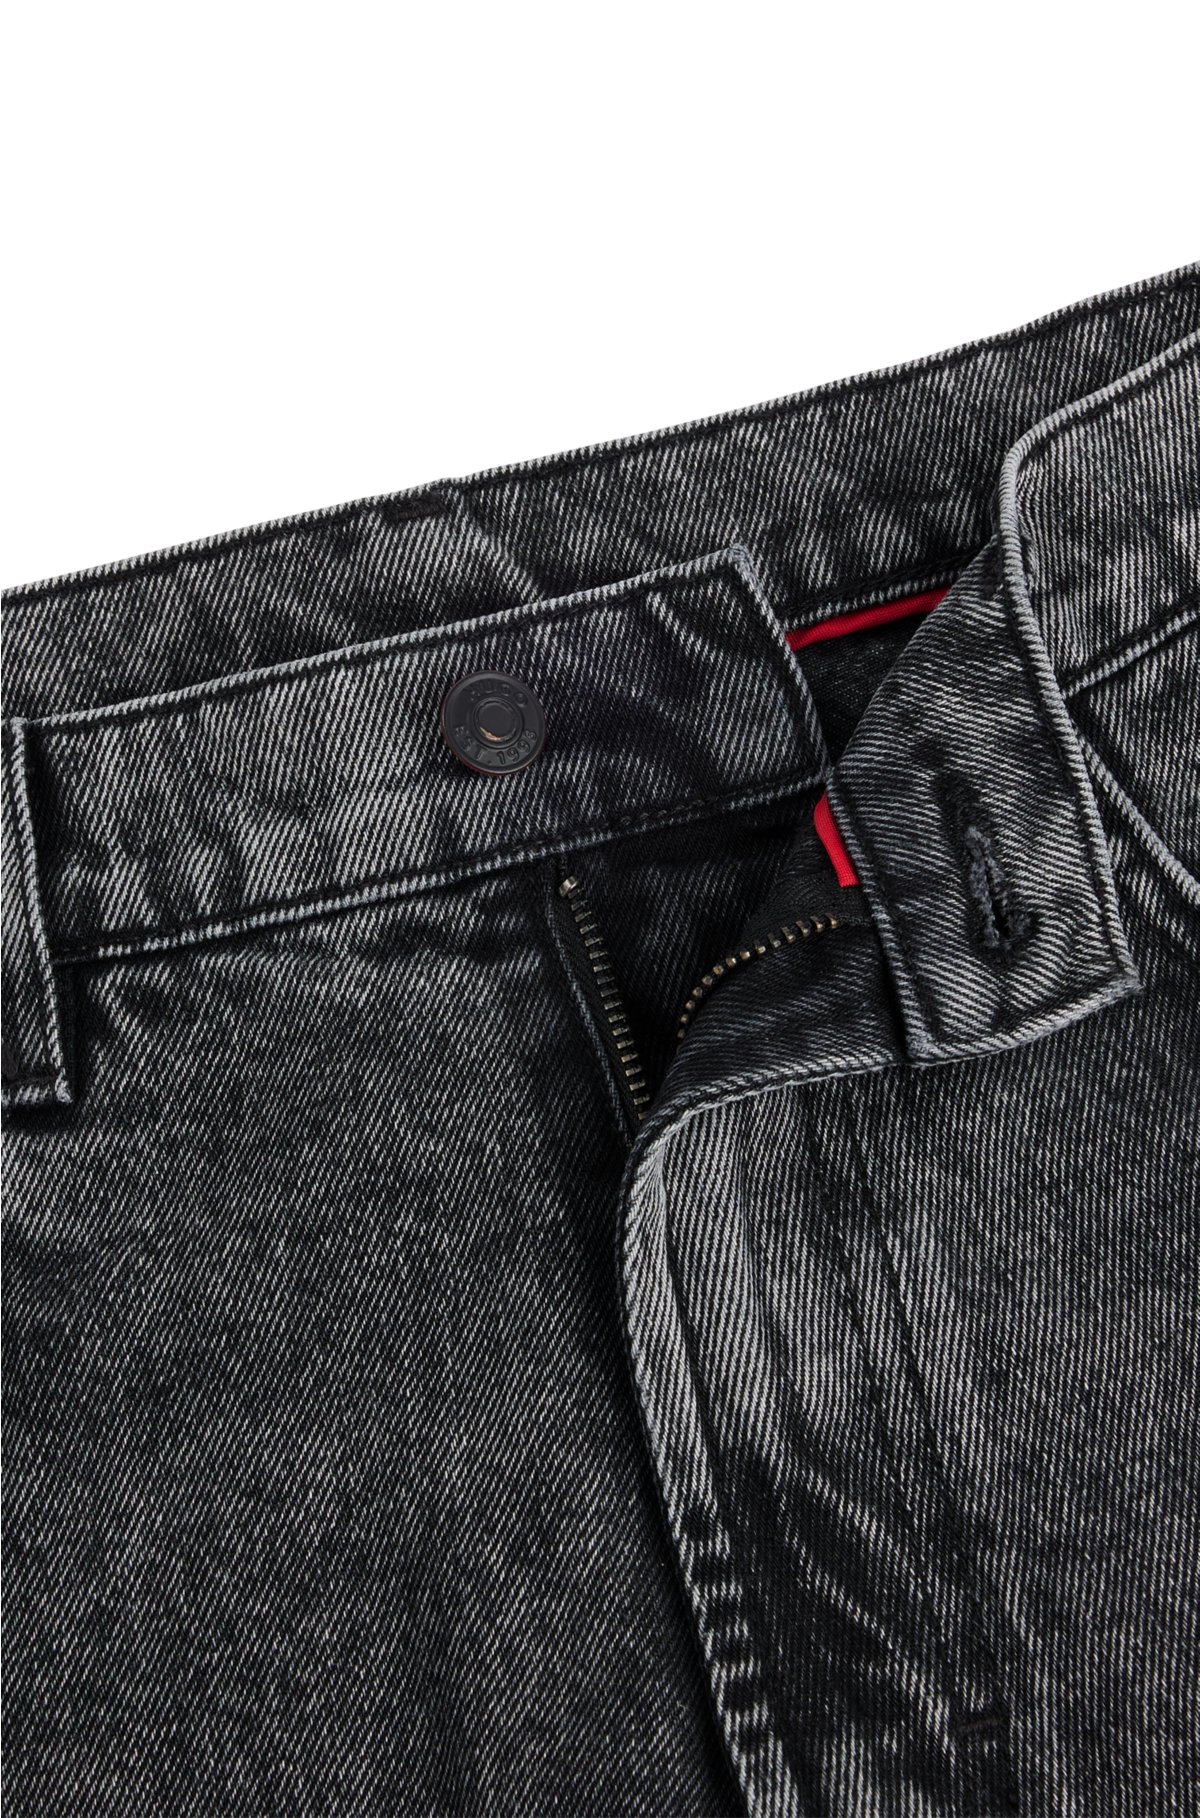 Regular-fit regular-rise jeans in grey denim, Dark Grey